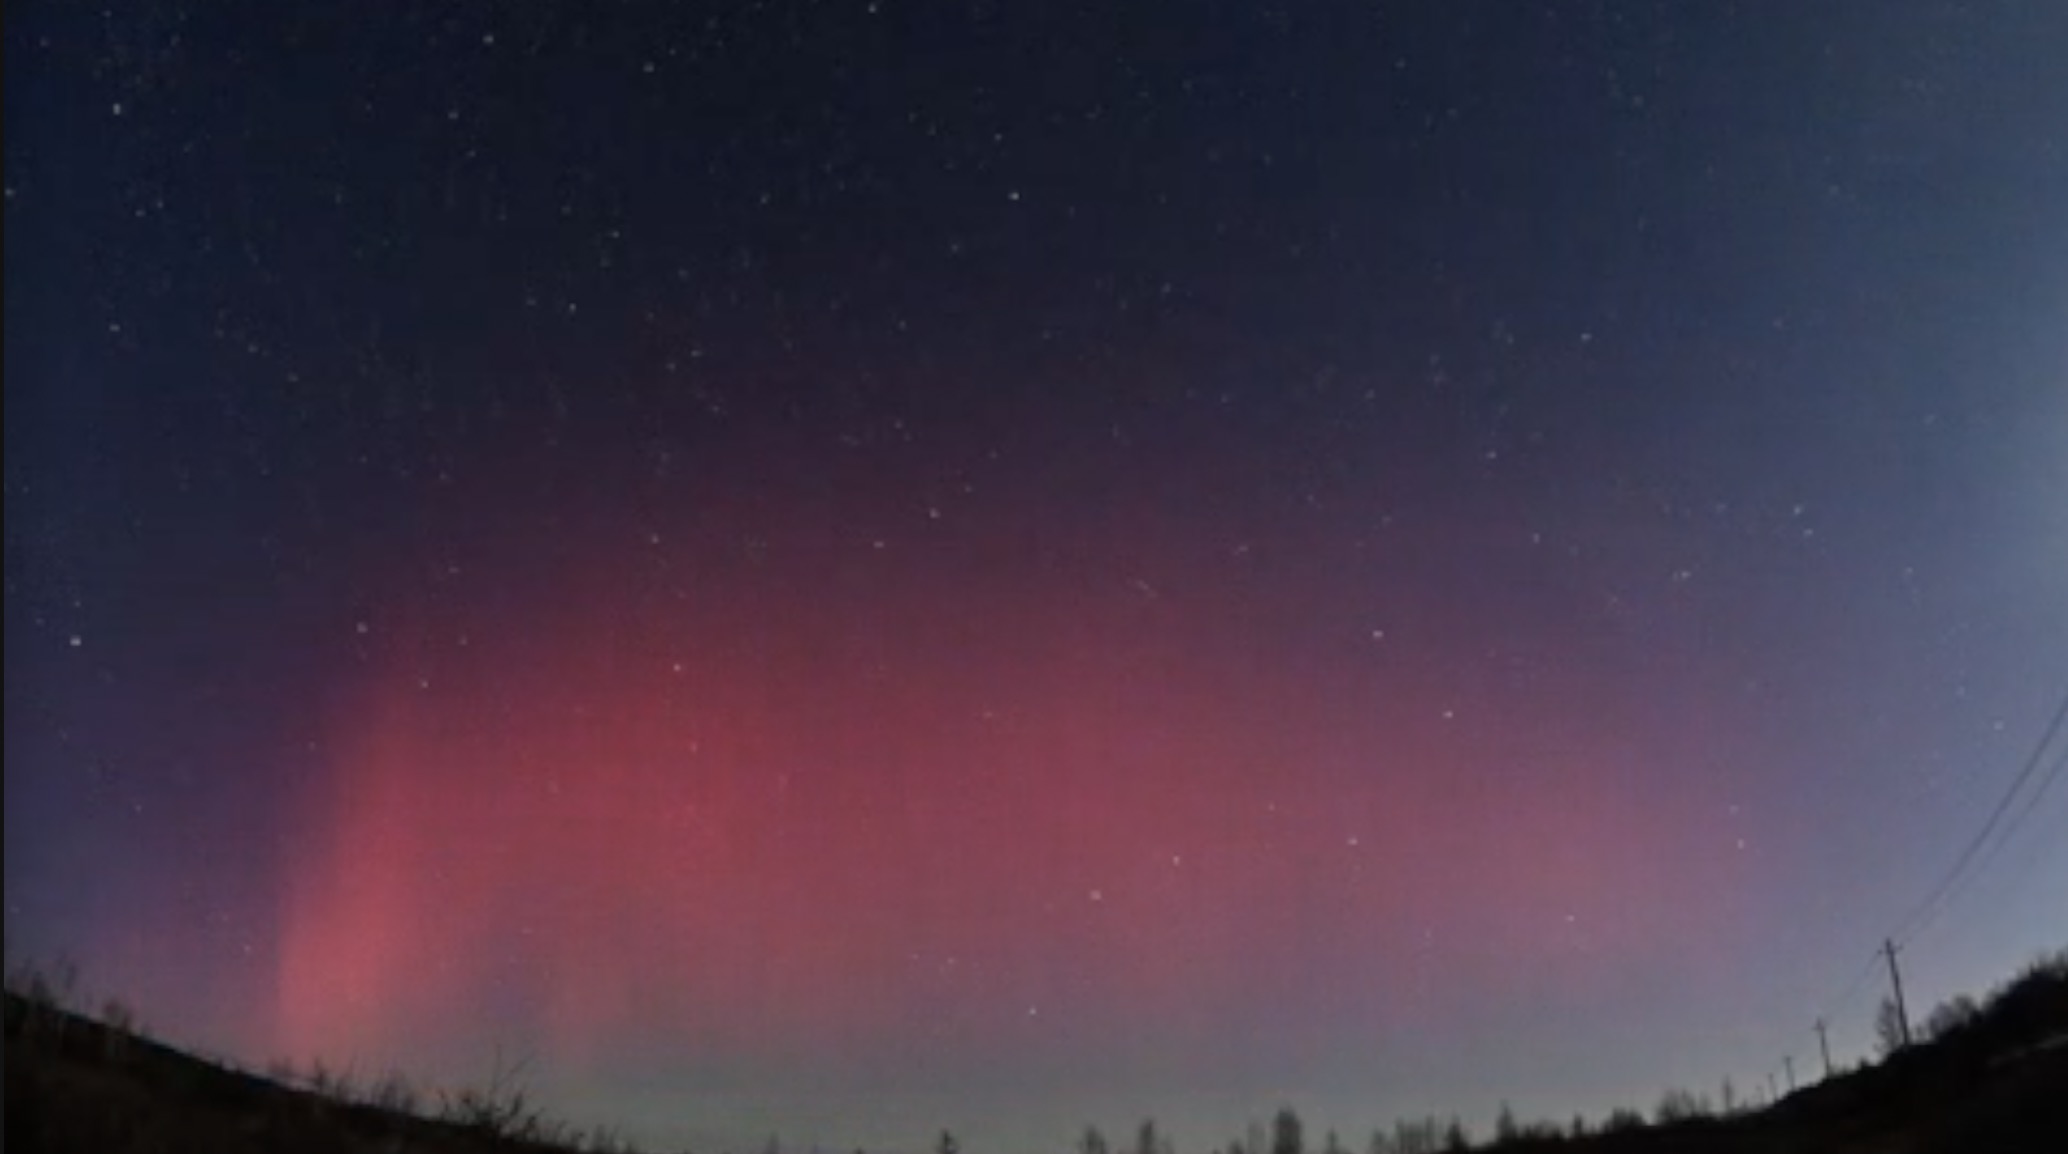 Stunning aurora view in north China